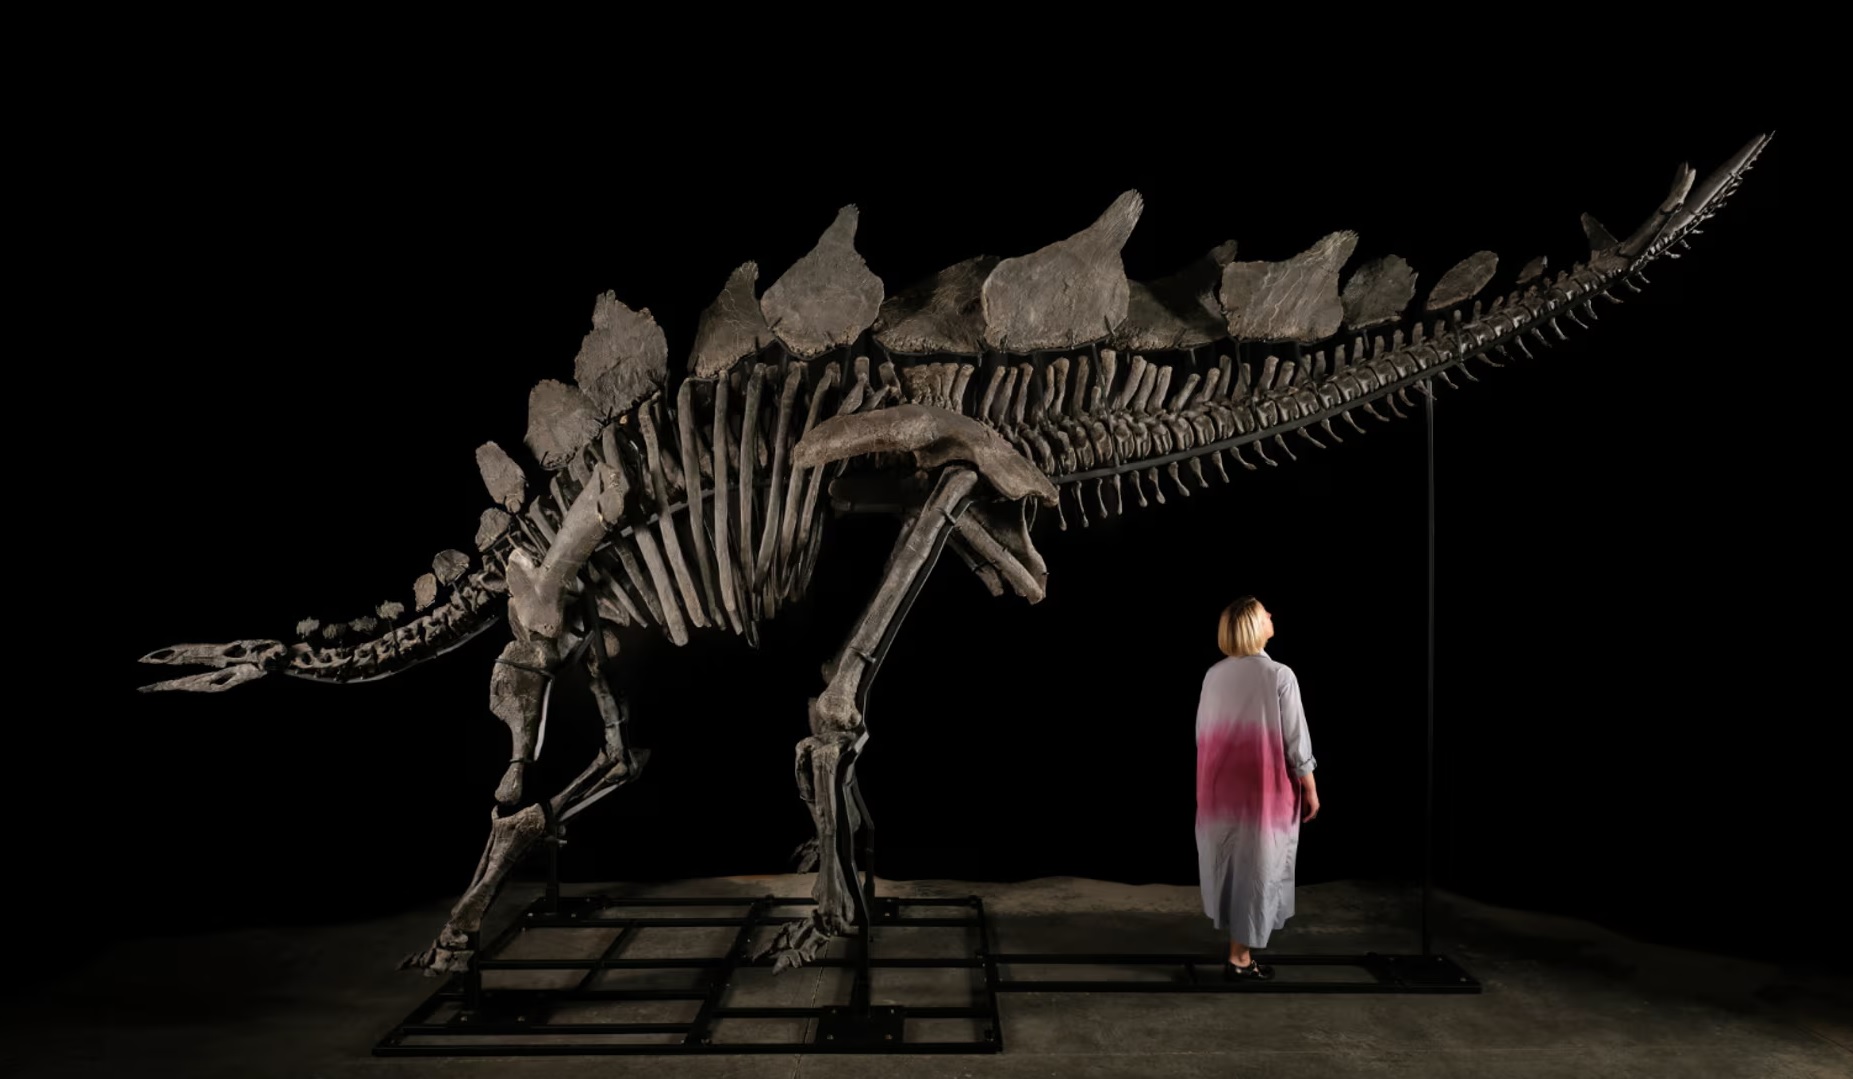 2 milliárd forintnál is többért kelhet el a valaha talált legnagyobb Stegosaurus